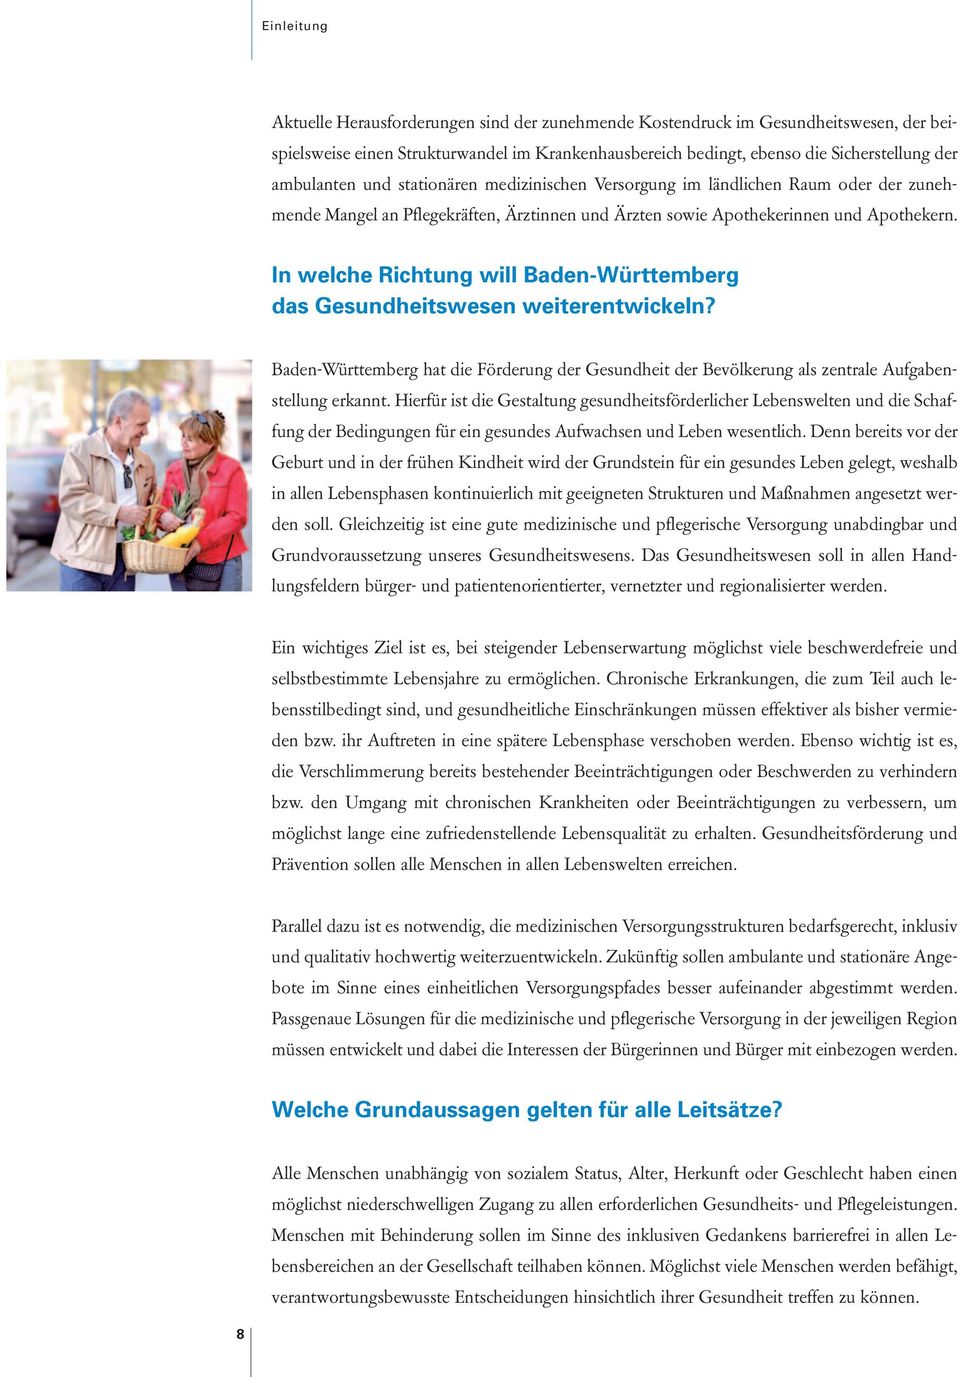 In welche Richtung will Baden-Württemberg das Gesundheitswesen weiterentwickeln? Baden-Württemberg hat die Förderung der Gesundheit der Bevölkerung als zentrale Aufgabenstellung erkannt.